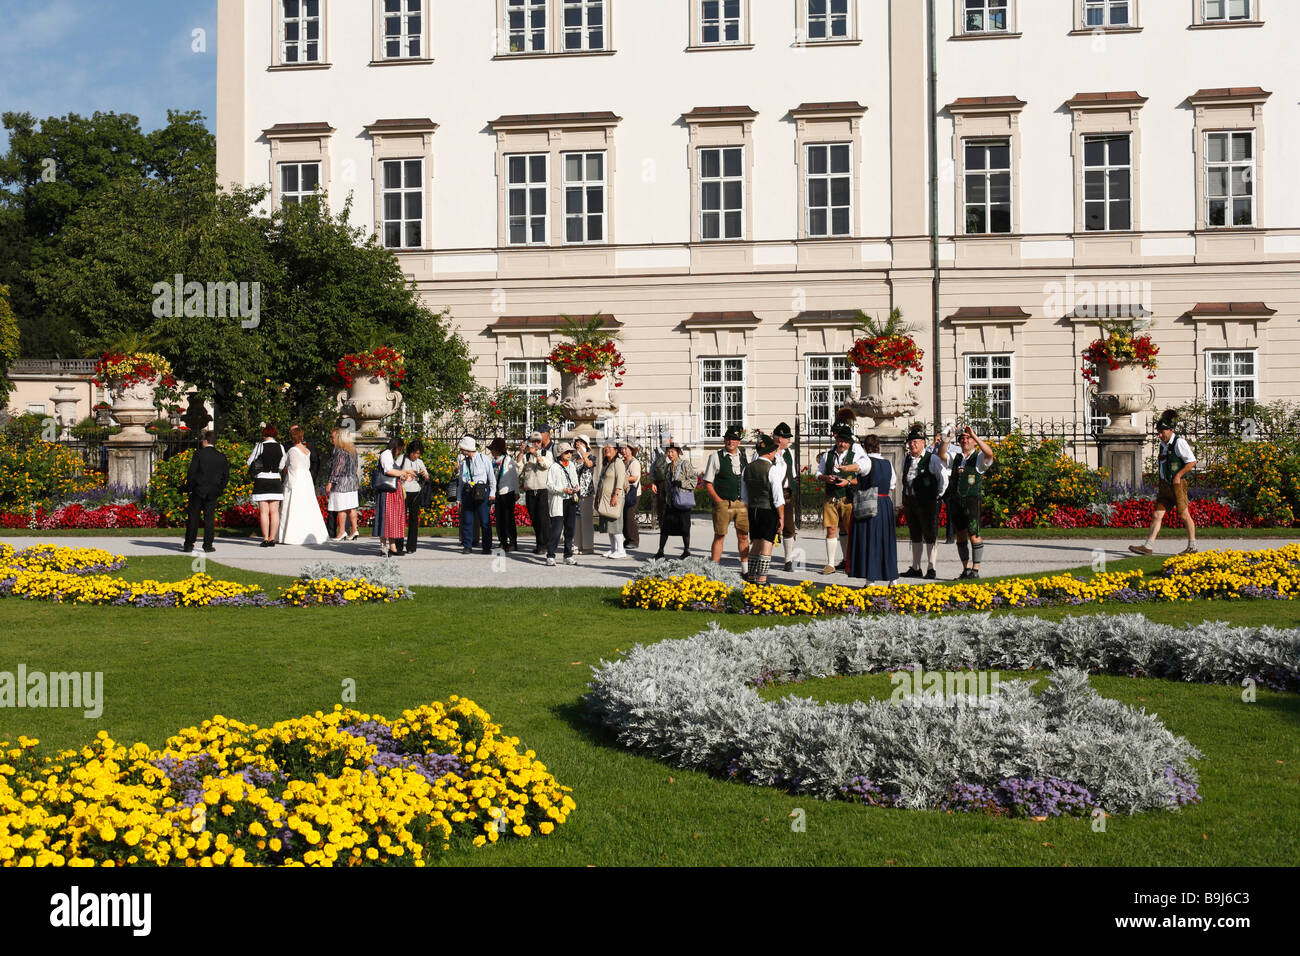 Gruppe von Touristen im Mirabellgarten, Schloss Mirabell, Salzburg, Austria, Europe Stockfoto